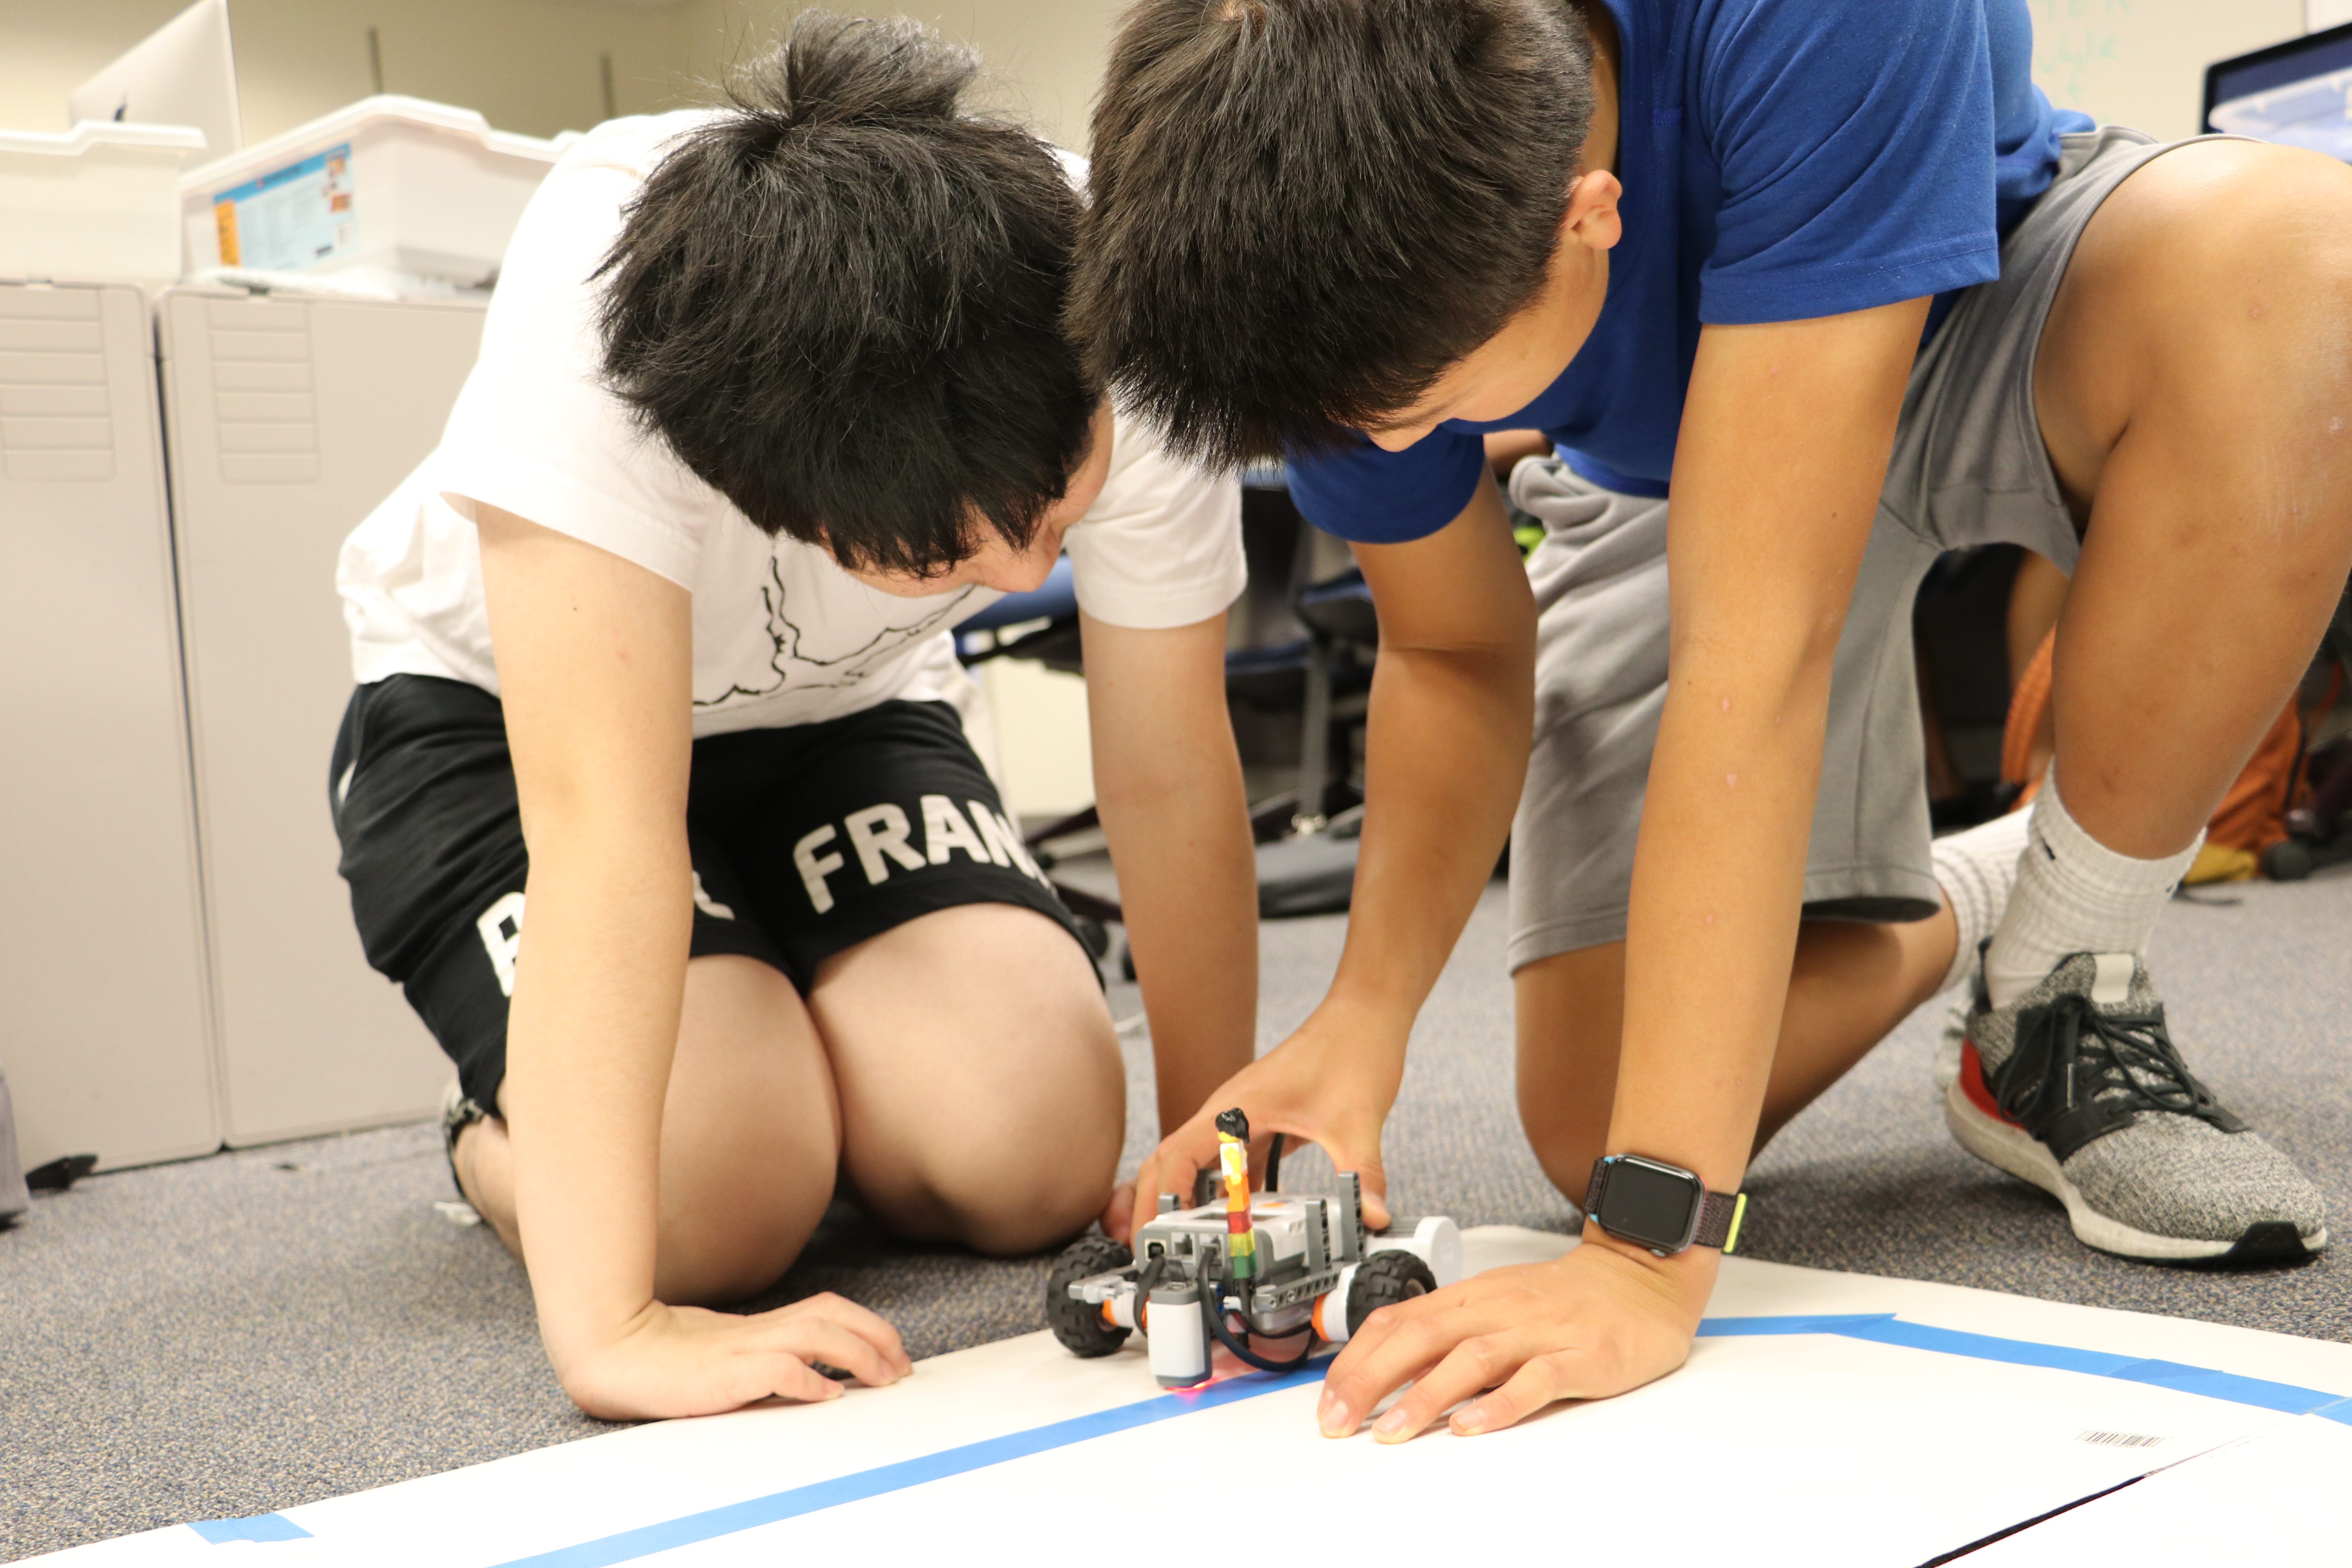 2 robotics students